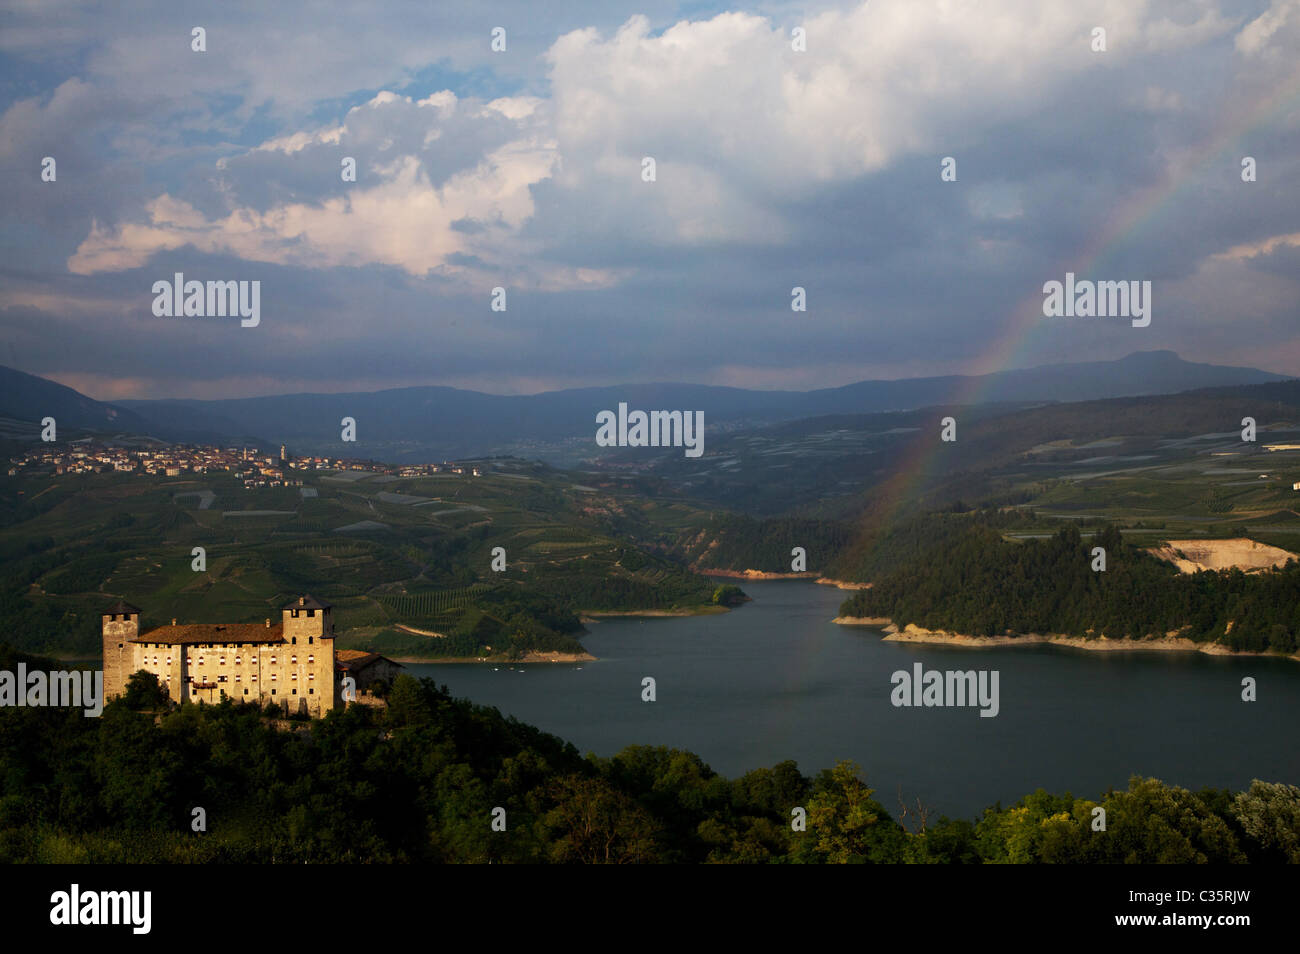 Il castello di Cles, Santa Giustina lago, Val di Non, in Trentino Alto Adige, Italia, Europa Foto Stock